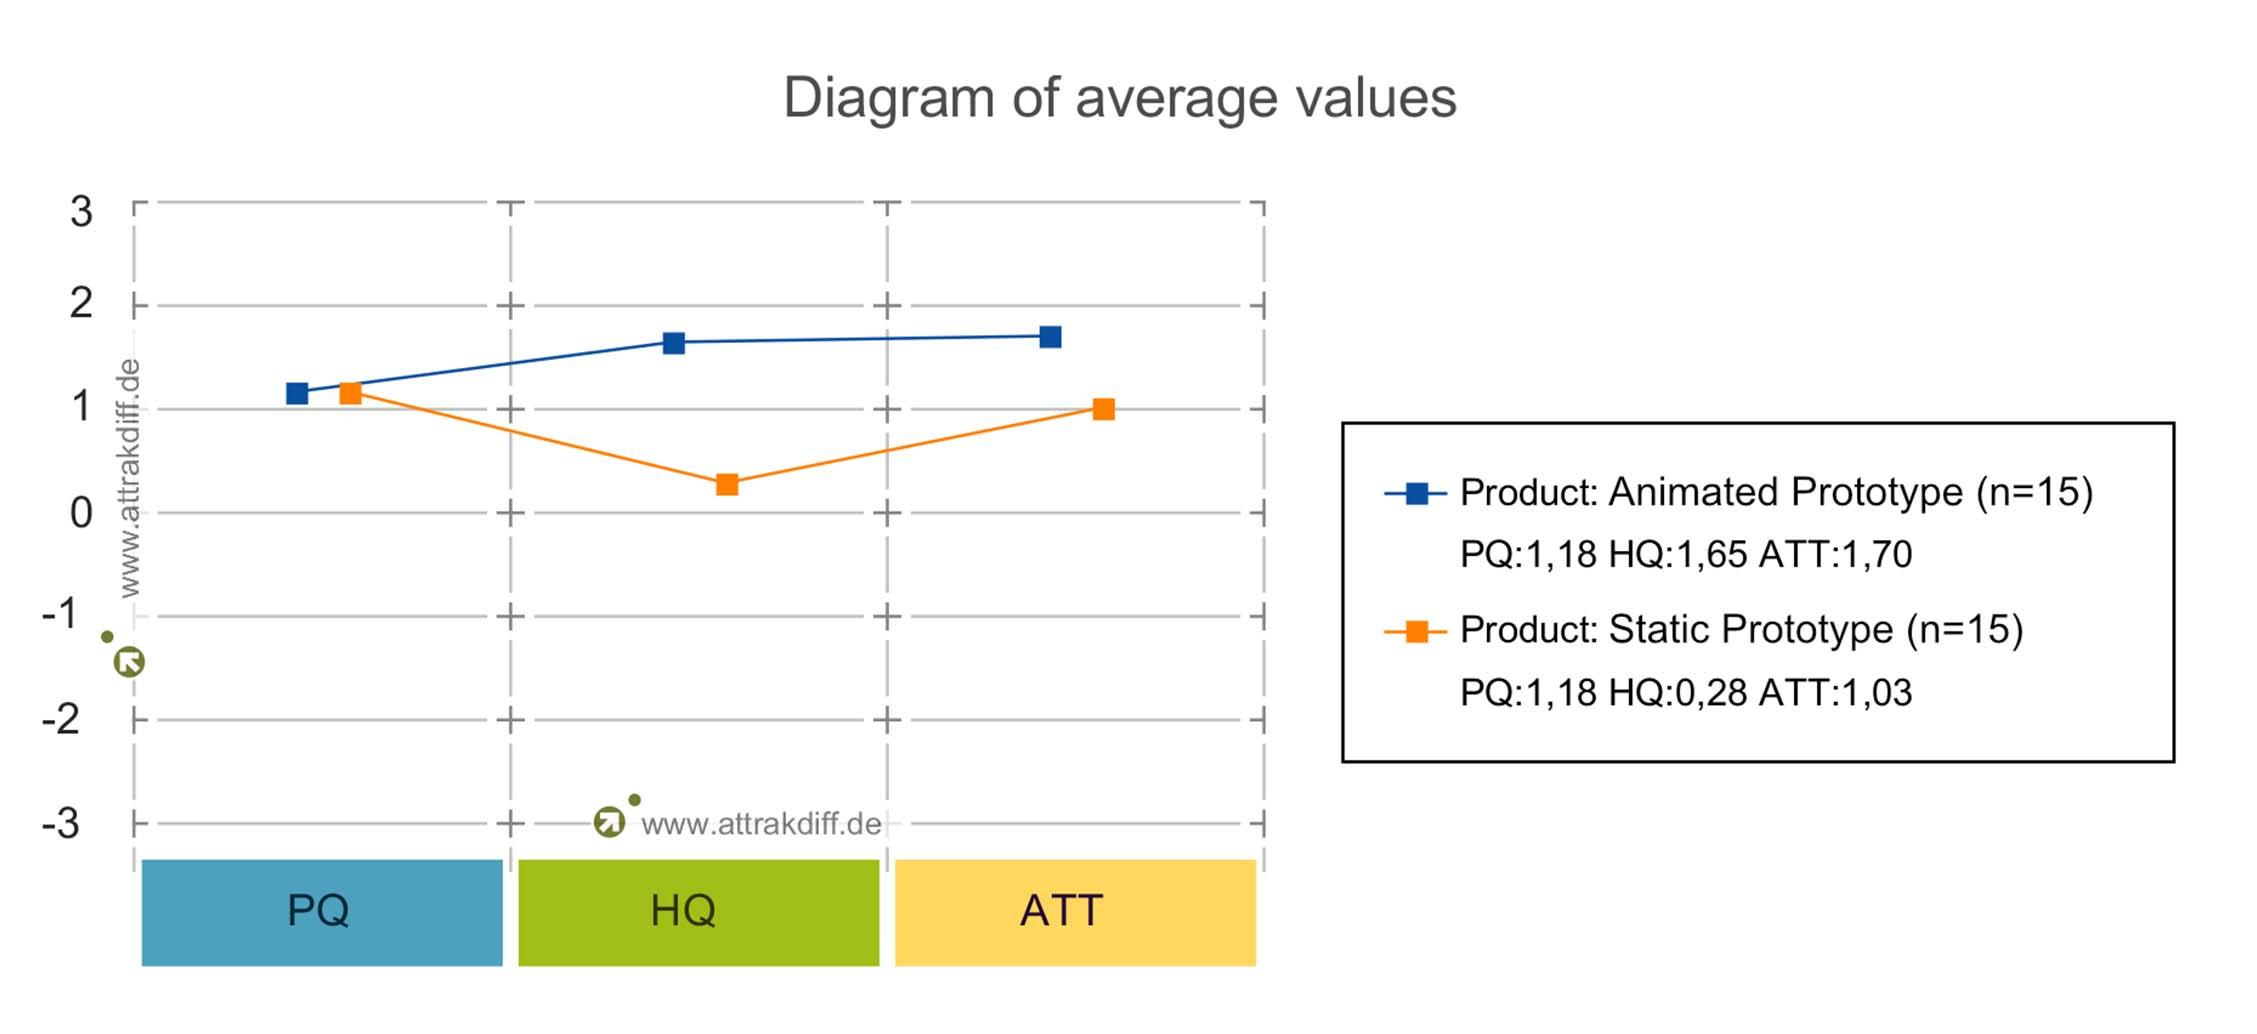 Figure 12 Diagram of average values